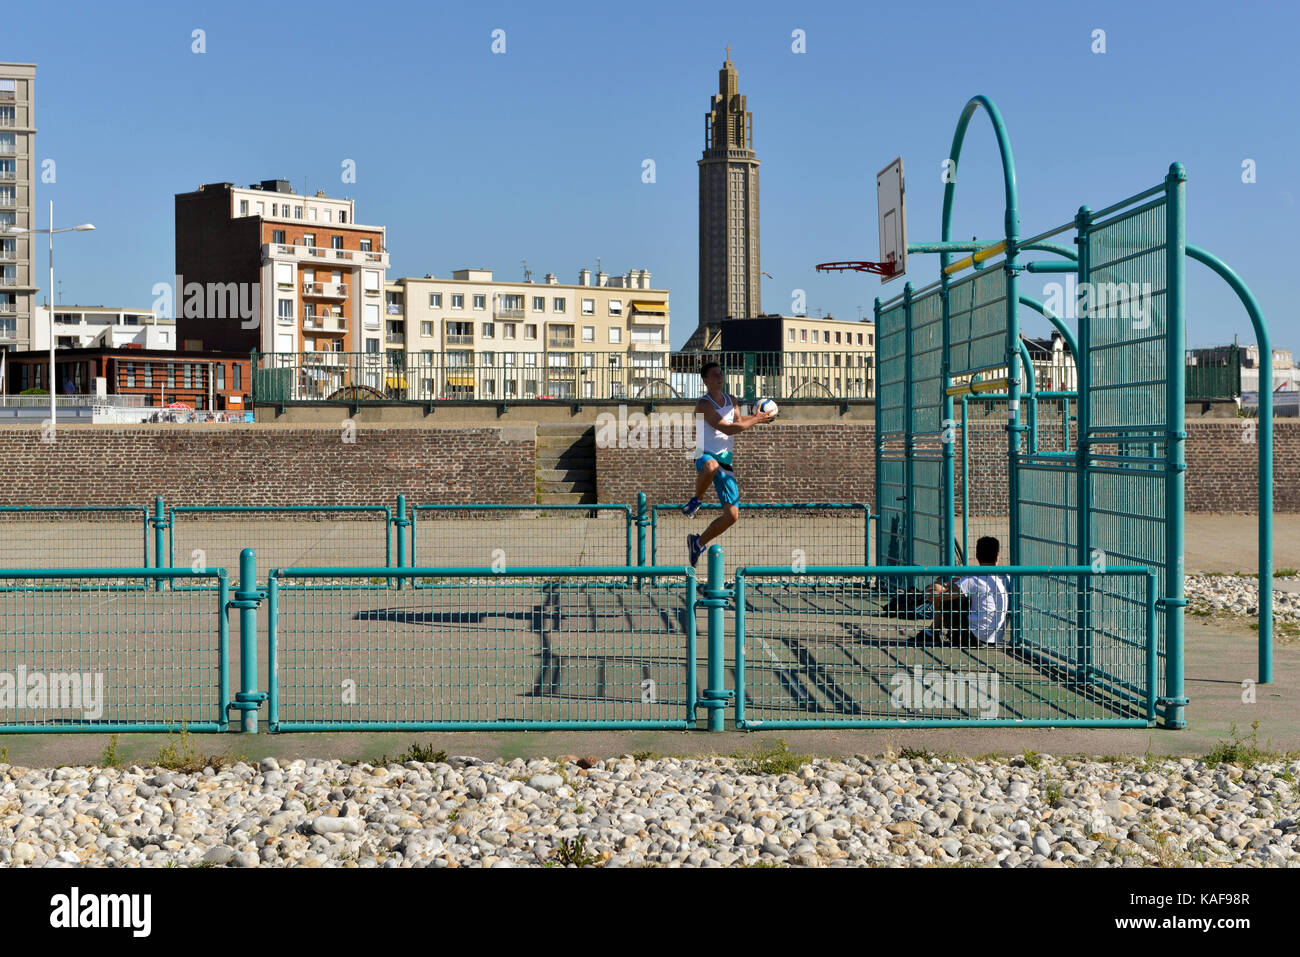 Le Havre (Normandie, région du nord-ouest de la France) : Basket-ball et des bâtiments le long de la mer. Clocher de l'église St. Joseph. Bâtiments desig Banque D'Images